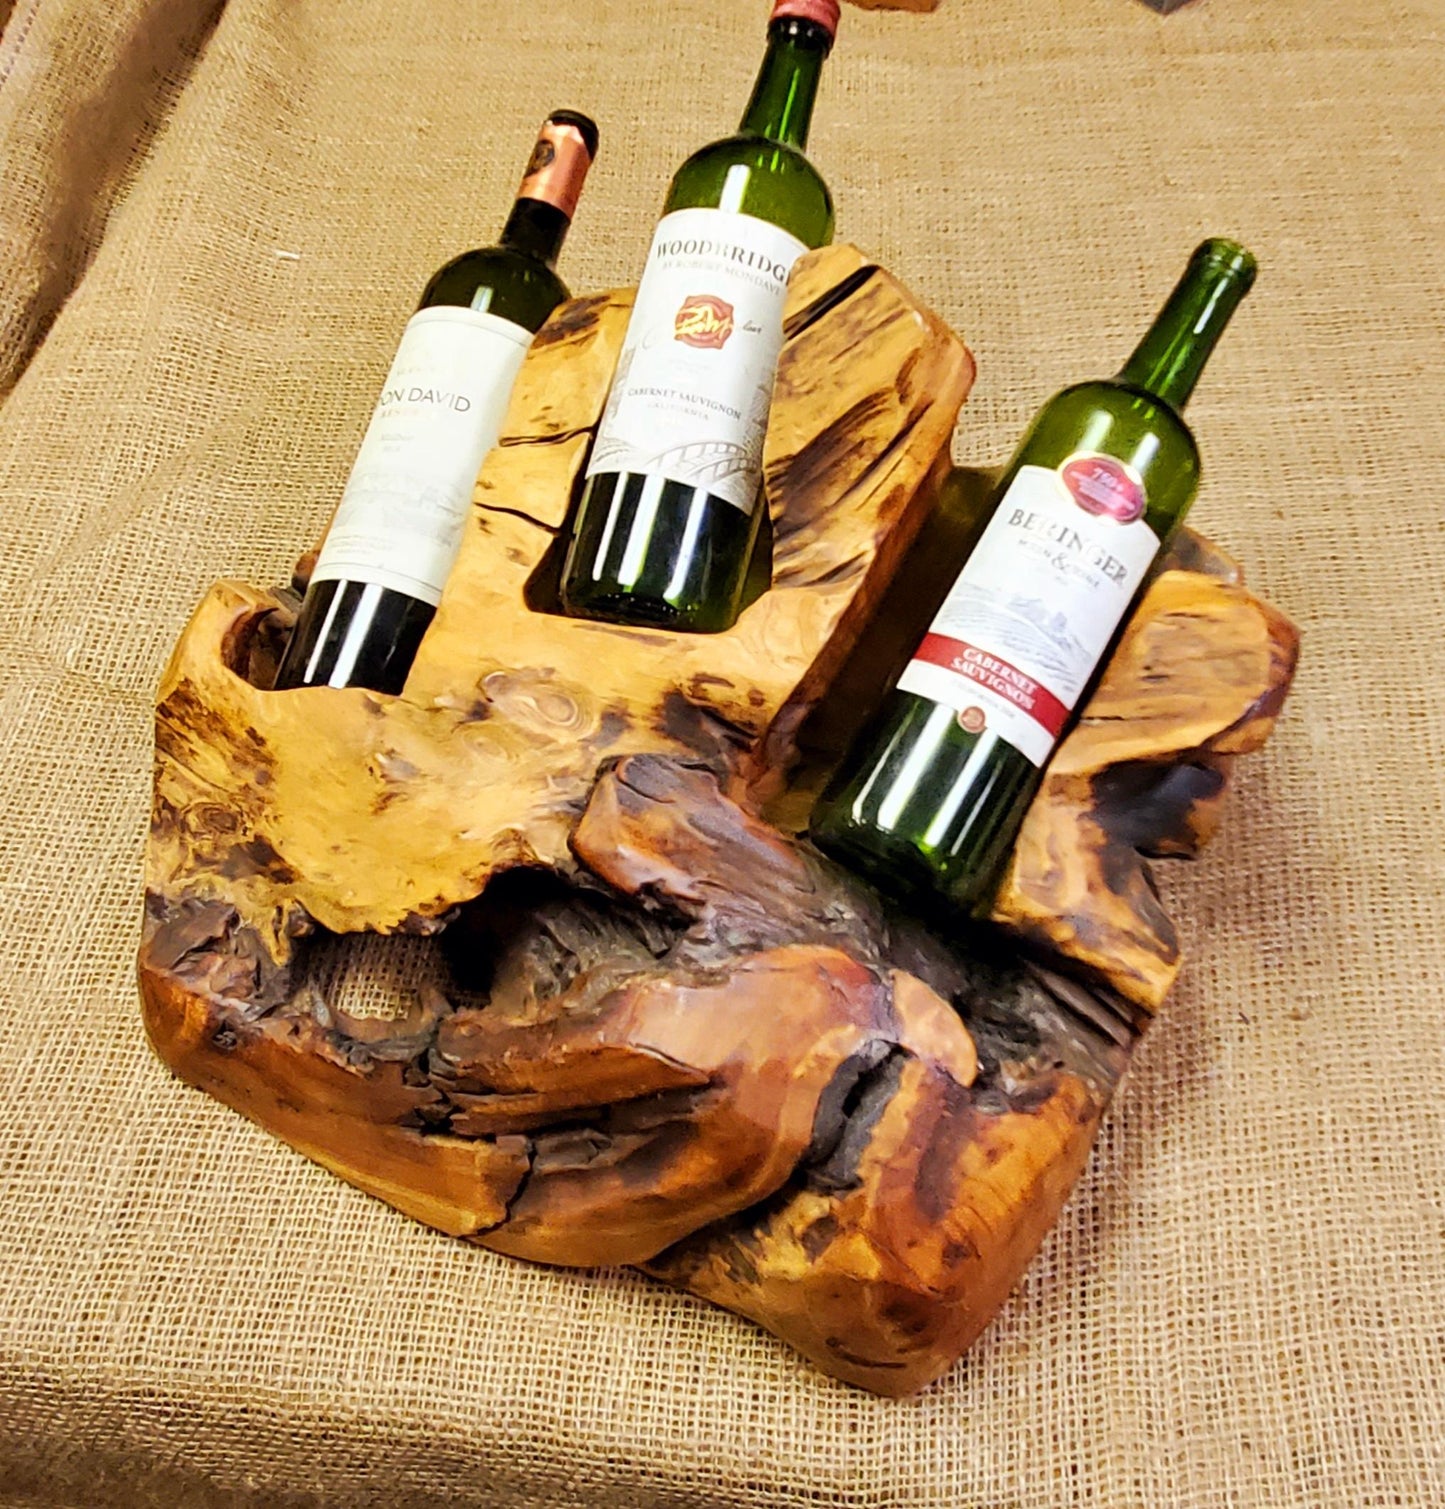 Reclaimed Wood Wine Bottle Holder - 3 Bottles